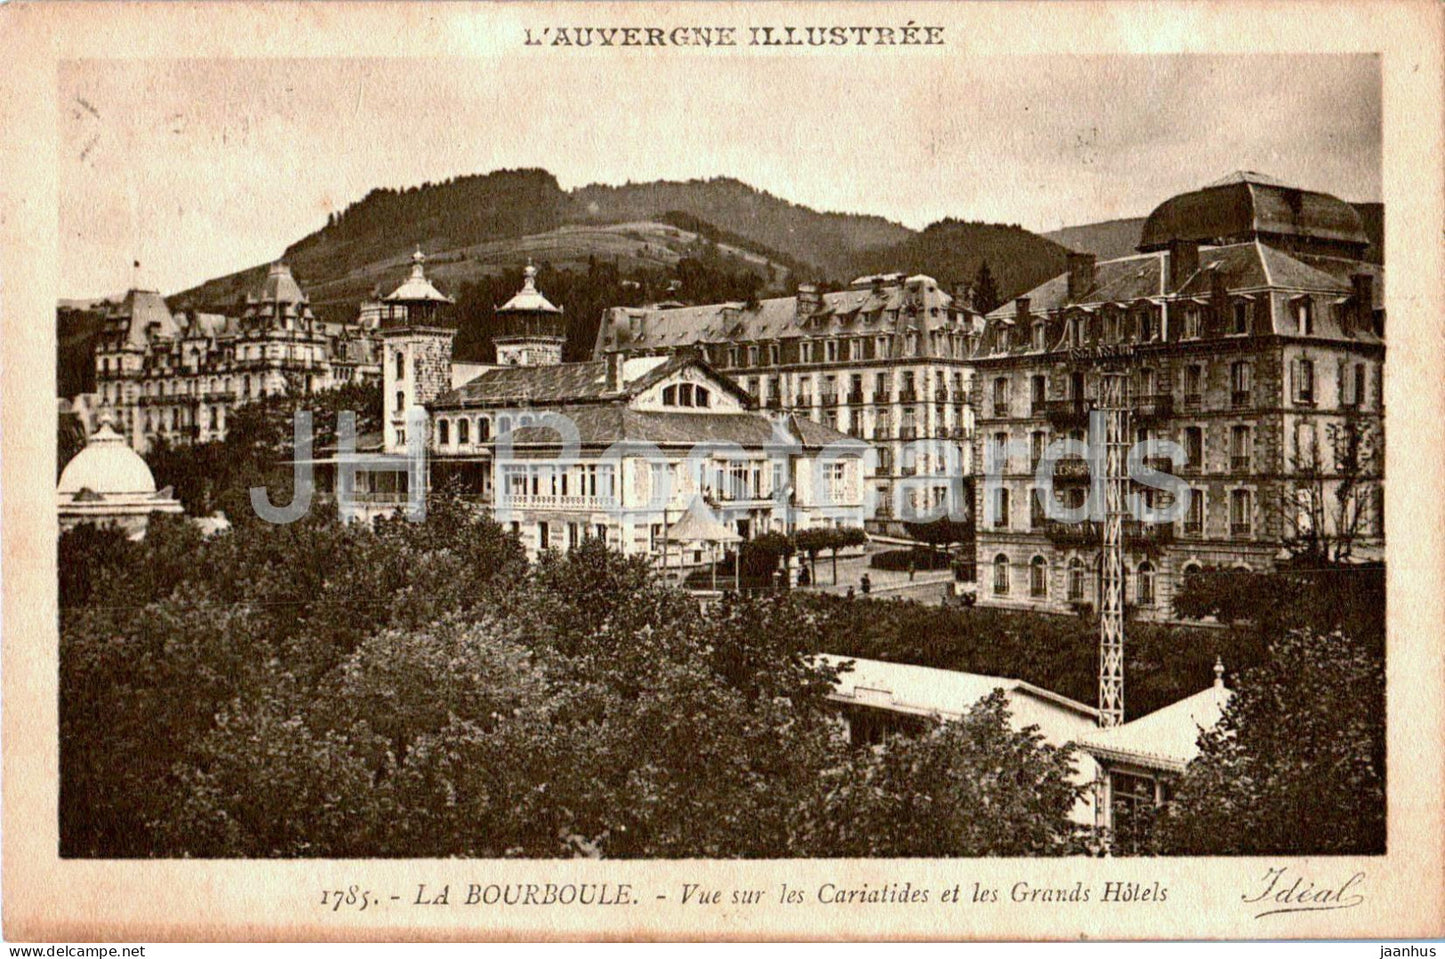 La Bourboule - Vue sur les Cariatides et les Grands Hotels - hotel - 1785 - old postcard - France - used - JH Postcards